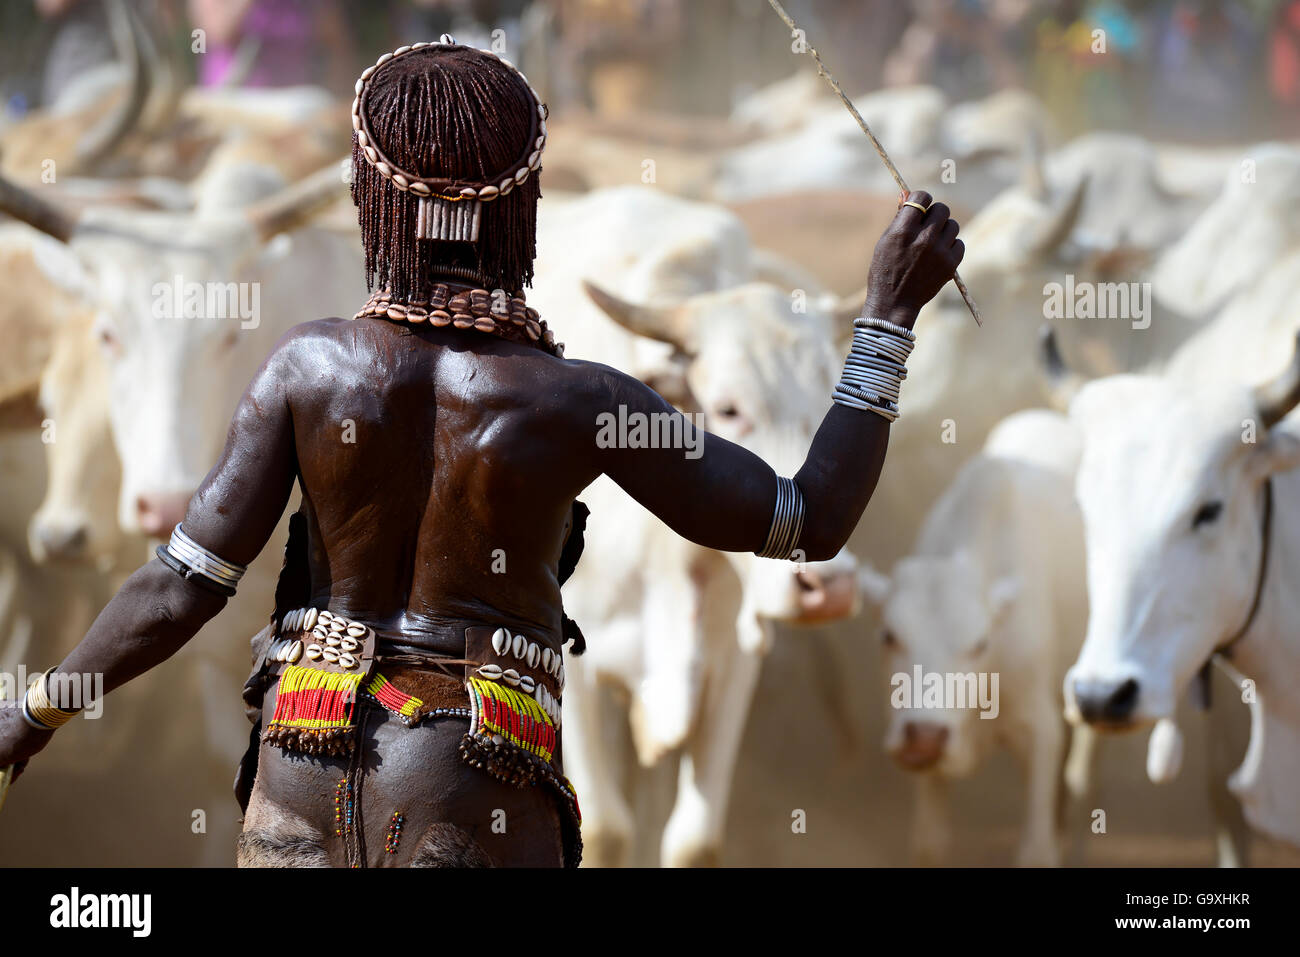 Frau mit Stick am springenden der Bullen Hamer Zeremonie. Diese Hamer Zeremonie, ist ein Durchgang in die Männlichkeit für Hamer Jungen. Während der Zeremonie junge weibliche Angehörige der jungen gepeitscht werden betteln. Die tieferen ihre Narben, die mehr Liebe, die sie für ihre Jungen zeigen. Äthiopien, November 2014 Stockfoto